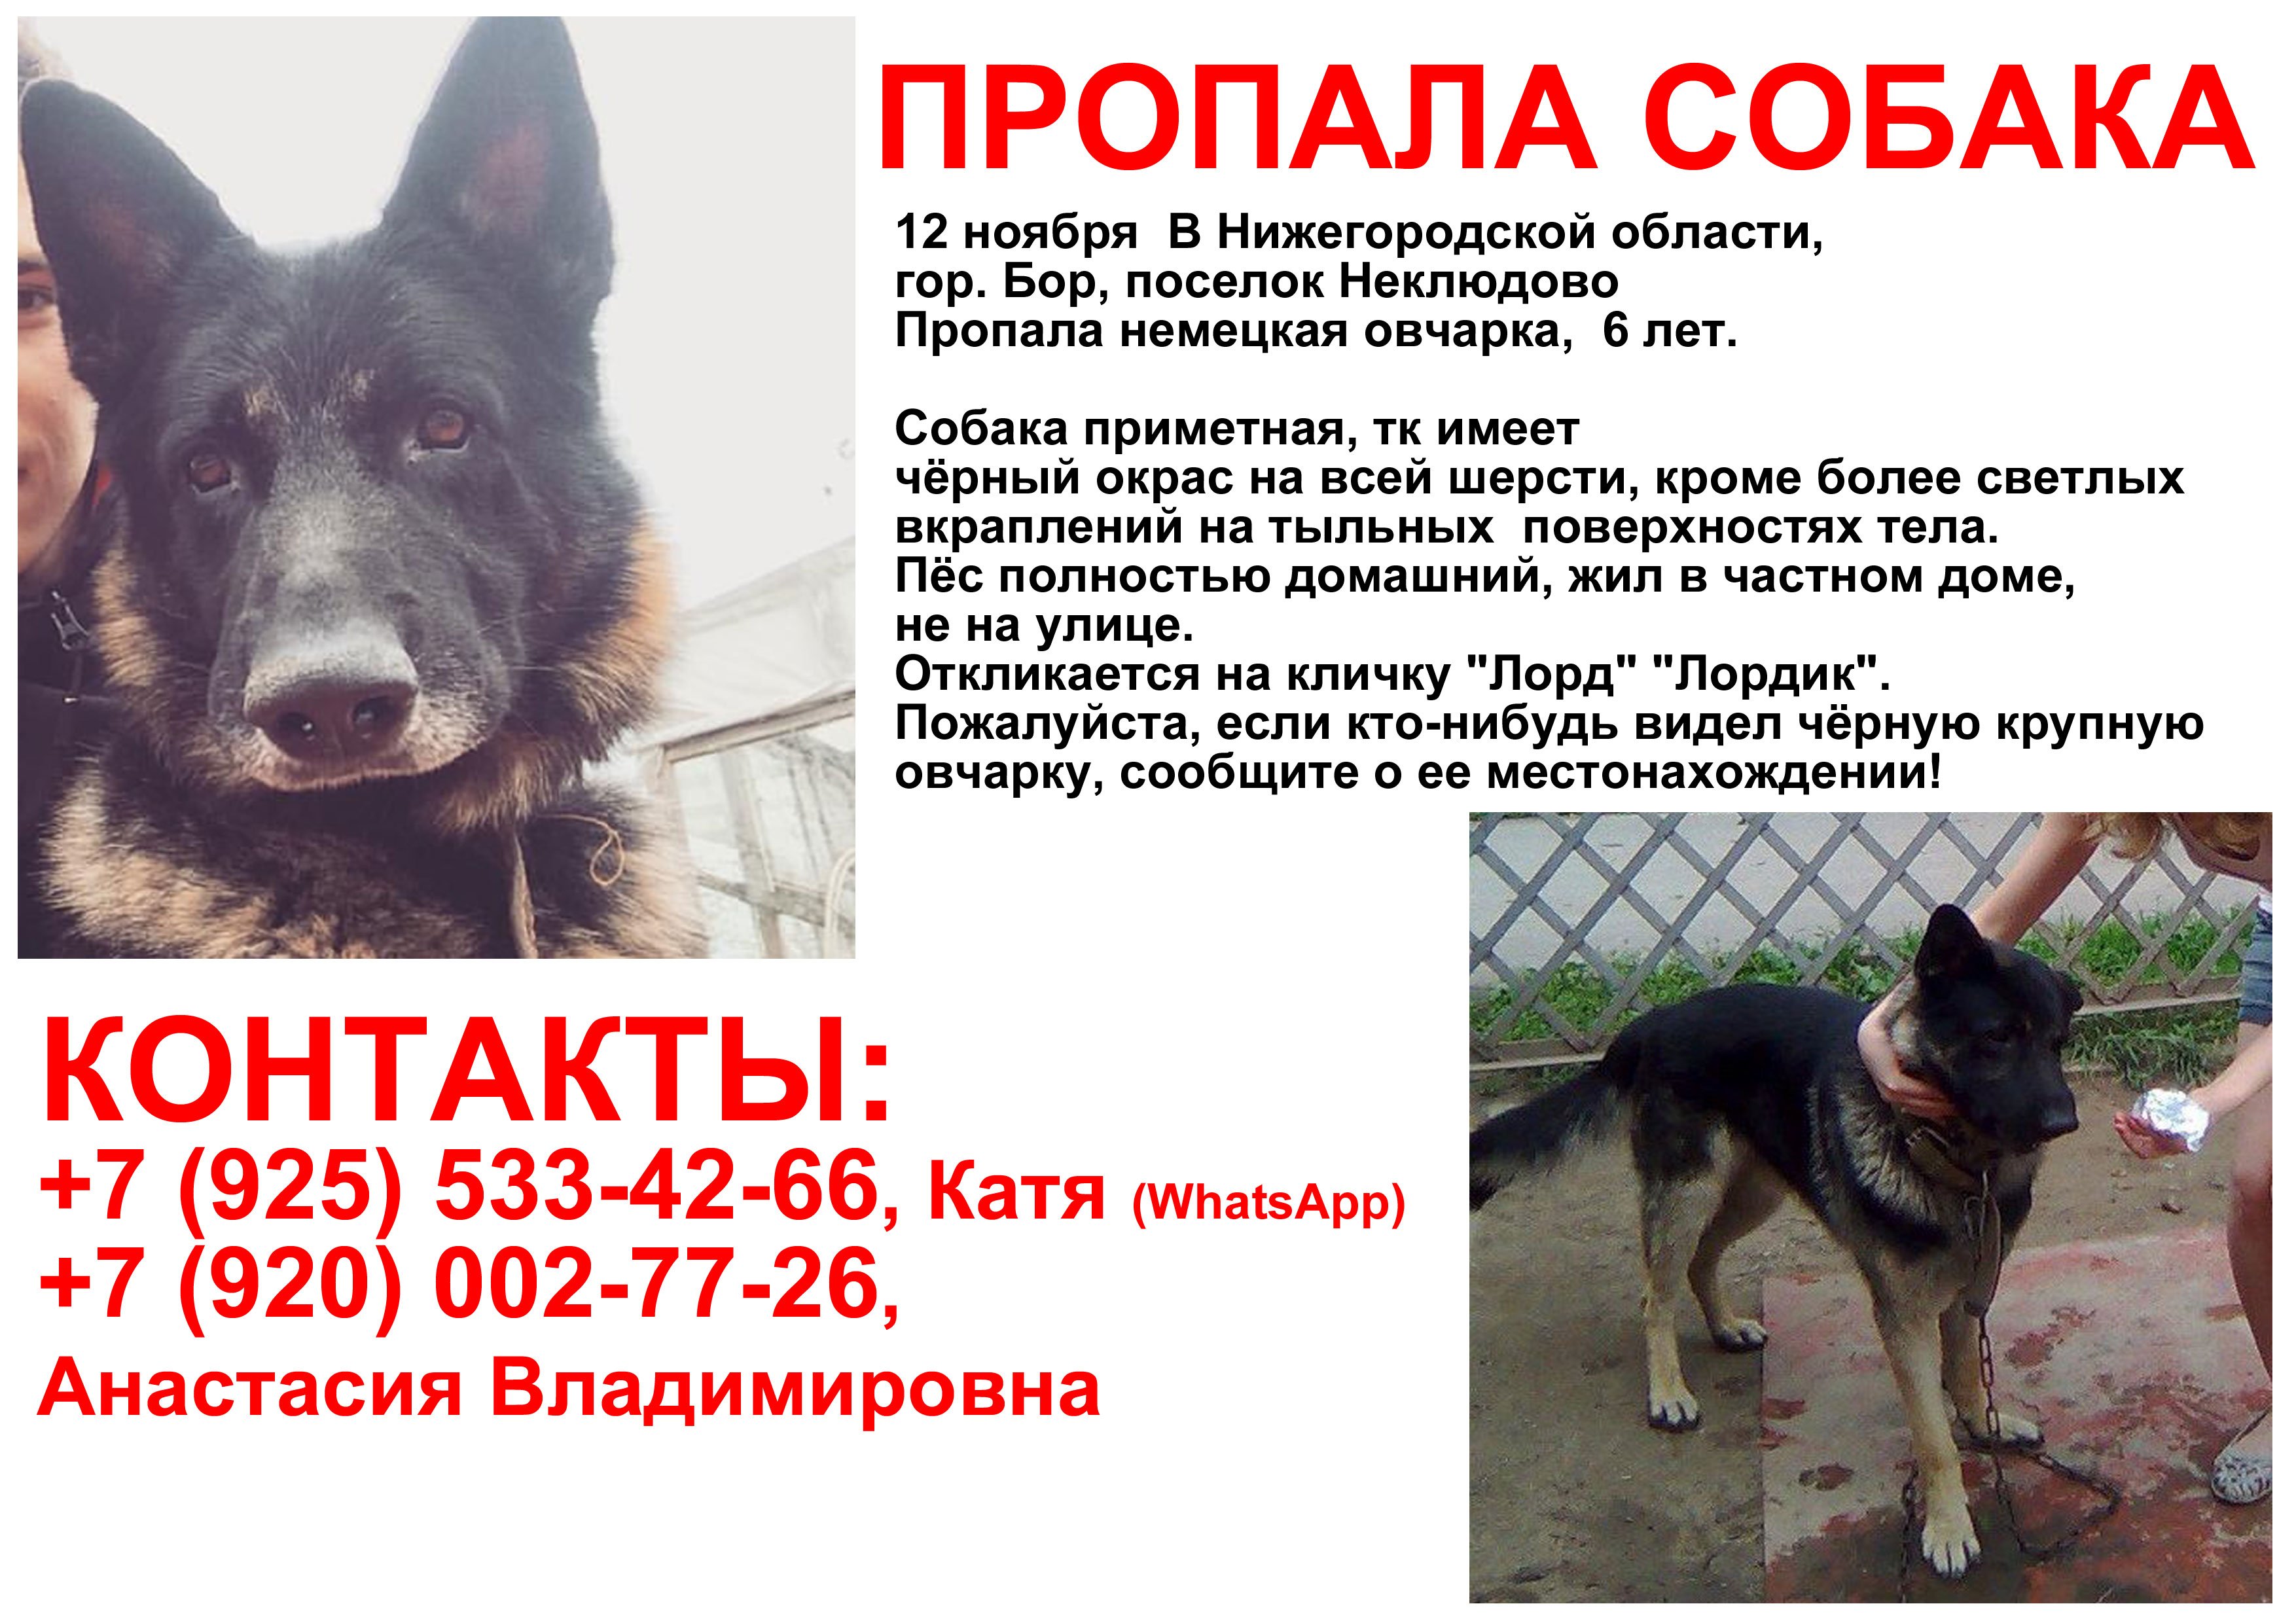 Потеряна собака московская область. Объявление о пропаже собаки. Пропала собака. Потерялась собака объявления. Объявление пропала собака.